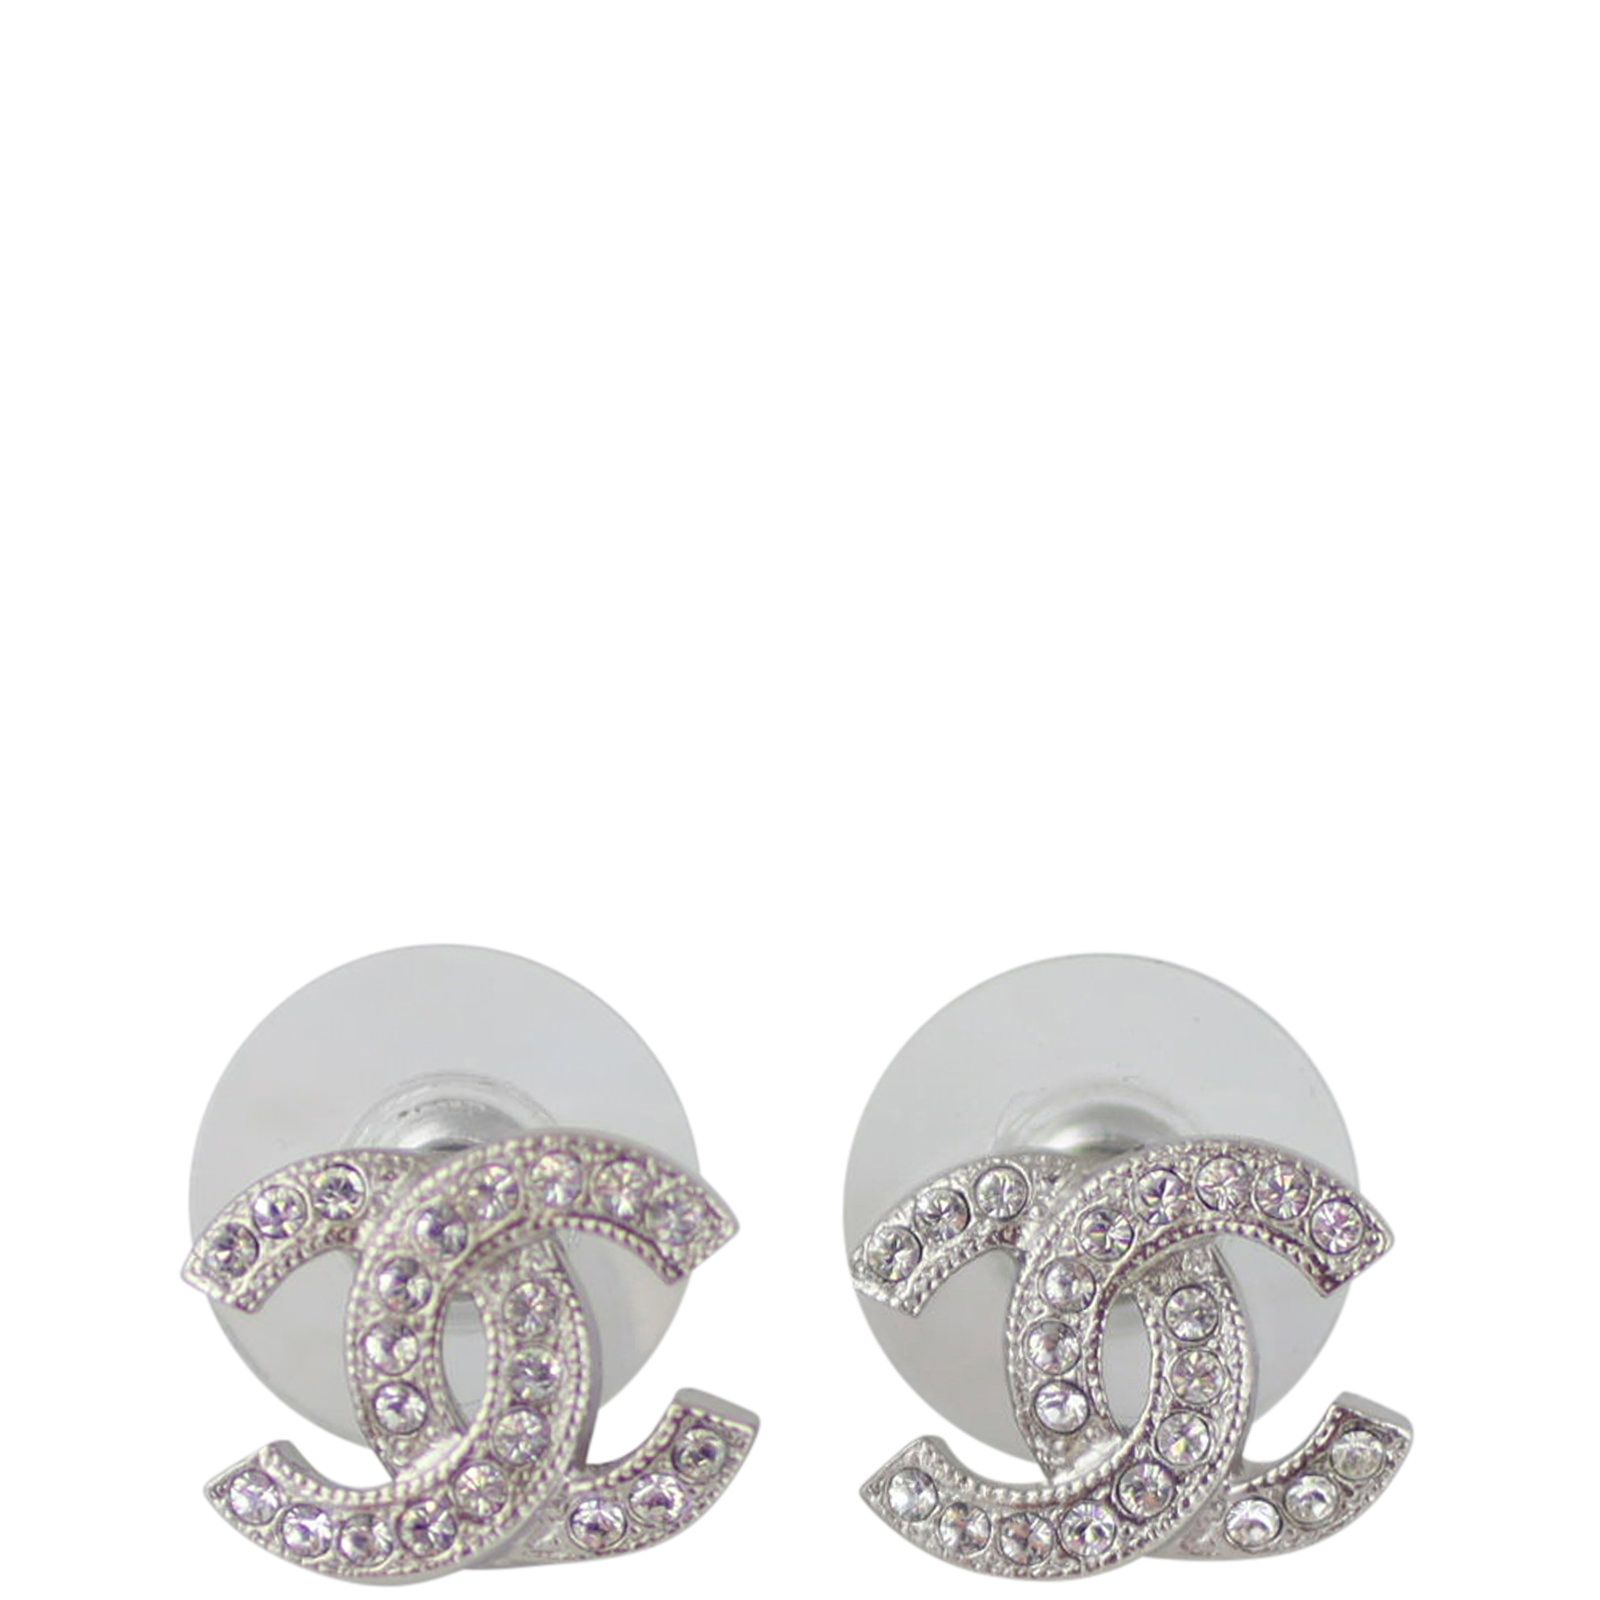 Chia sẻ với hơn 60 về chanel diamond earrings price mới nhất